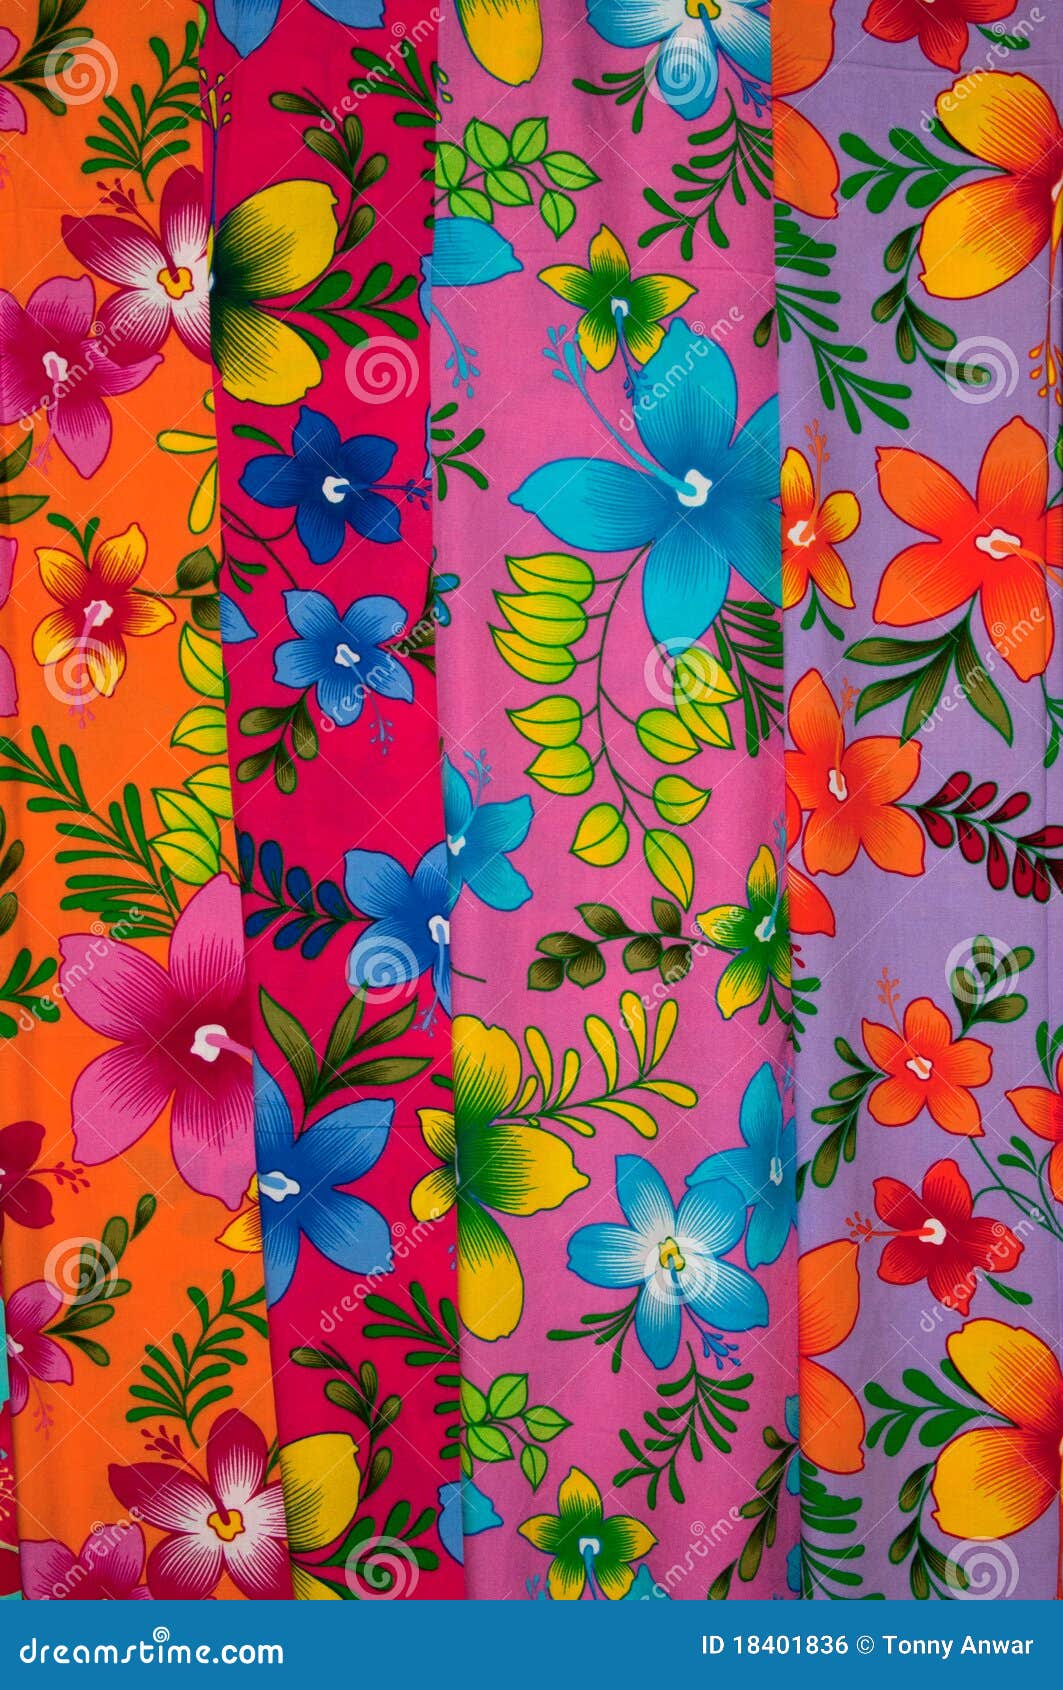 colorful sarong